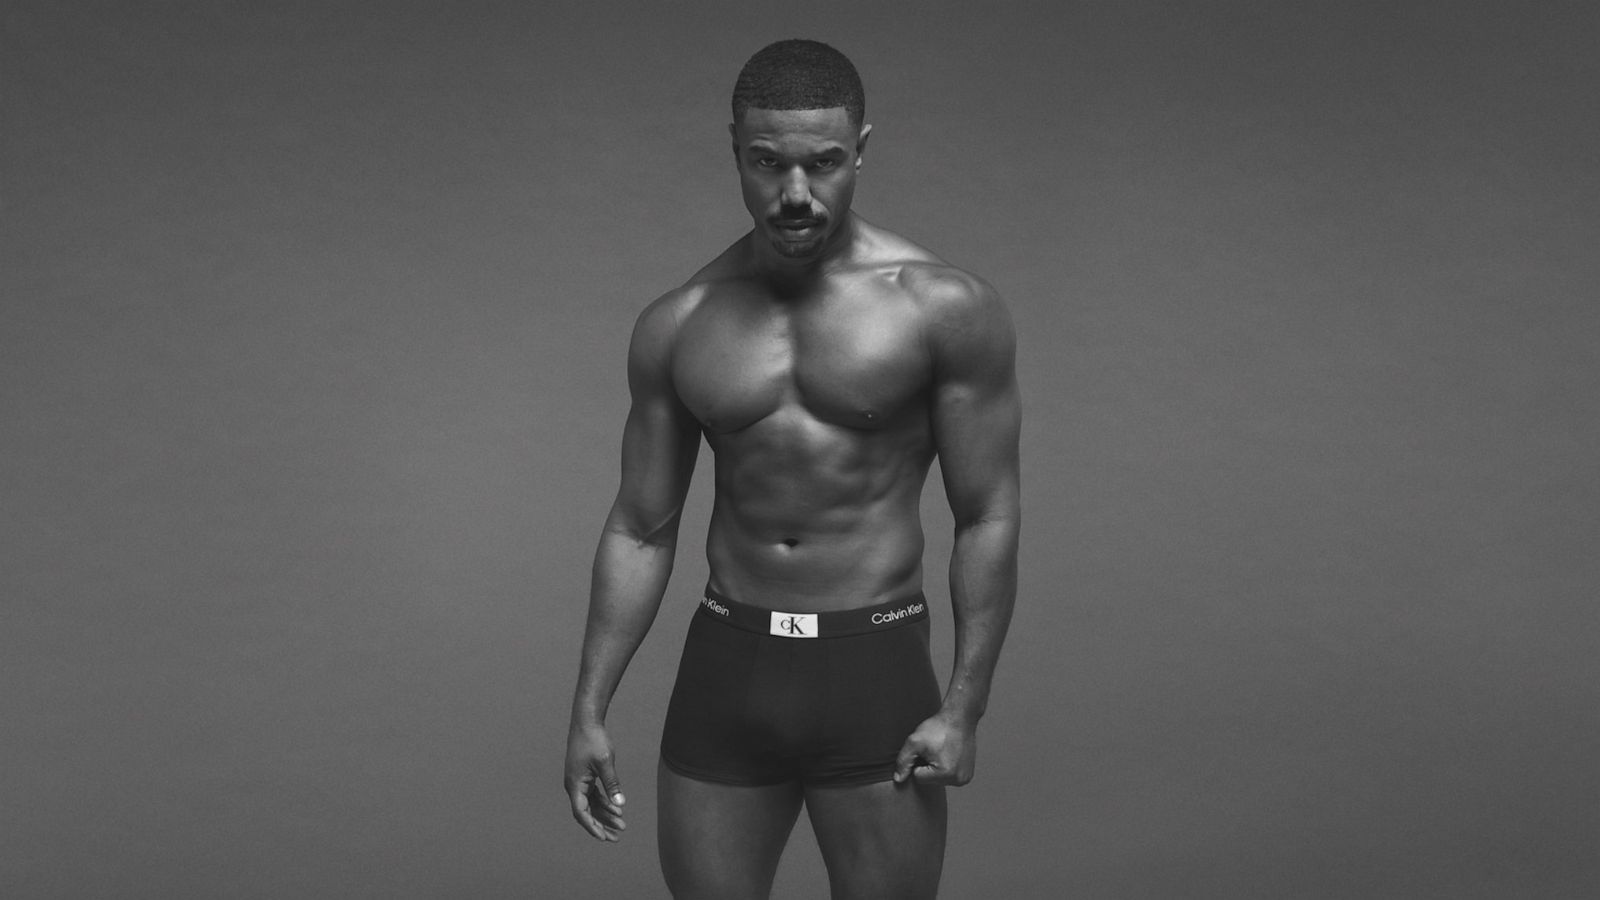 Calvin Klein - This is Underwear. Shared favorites, made